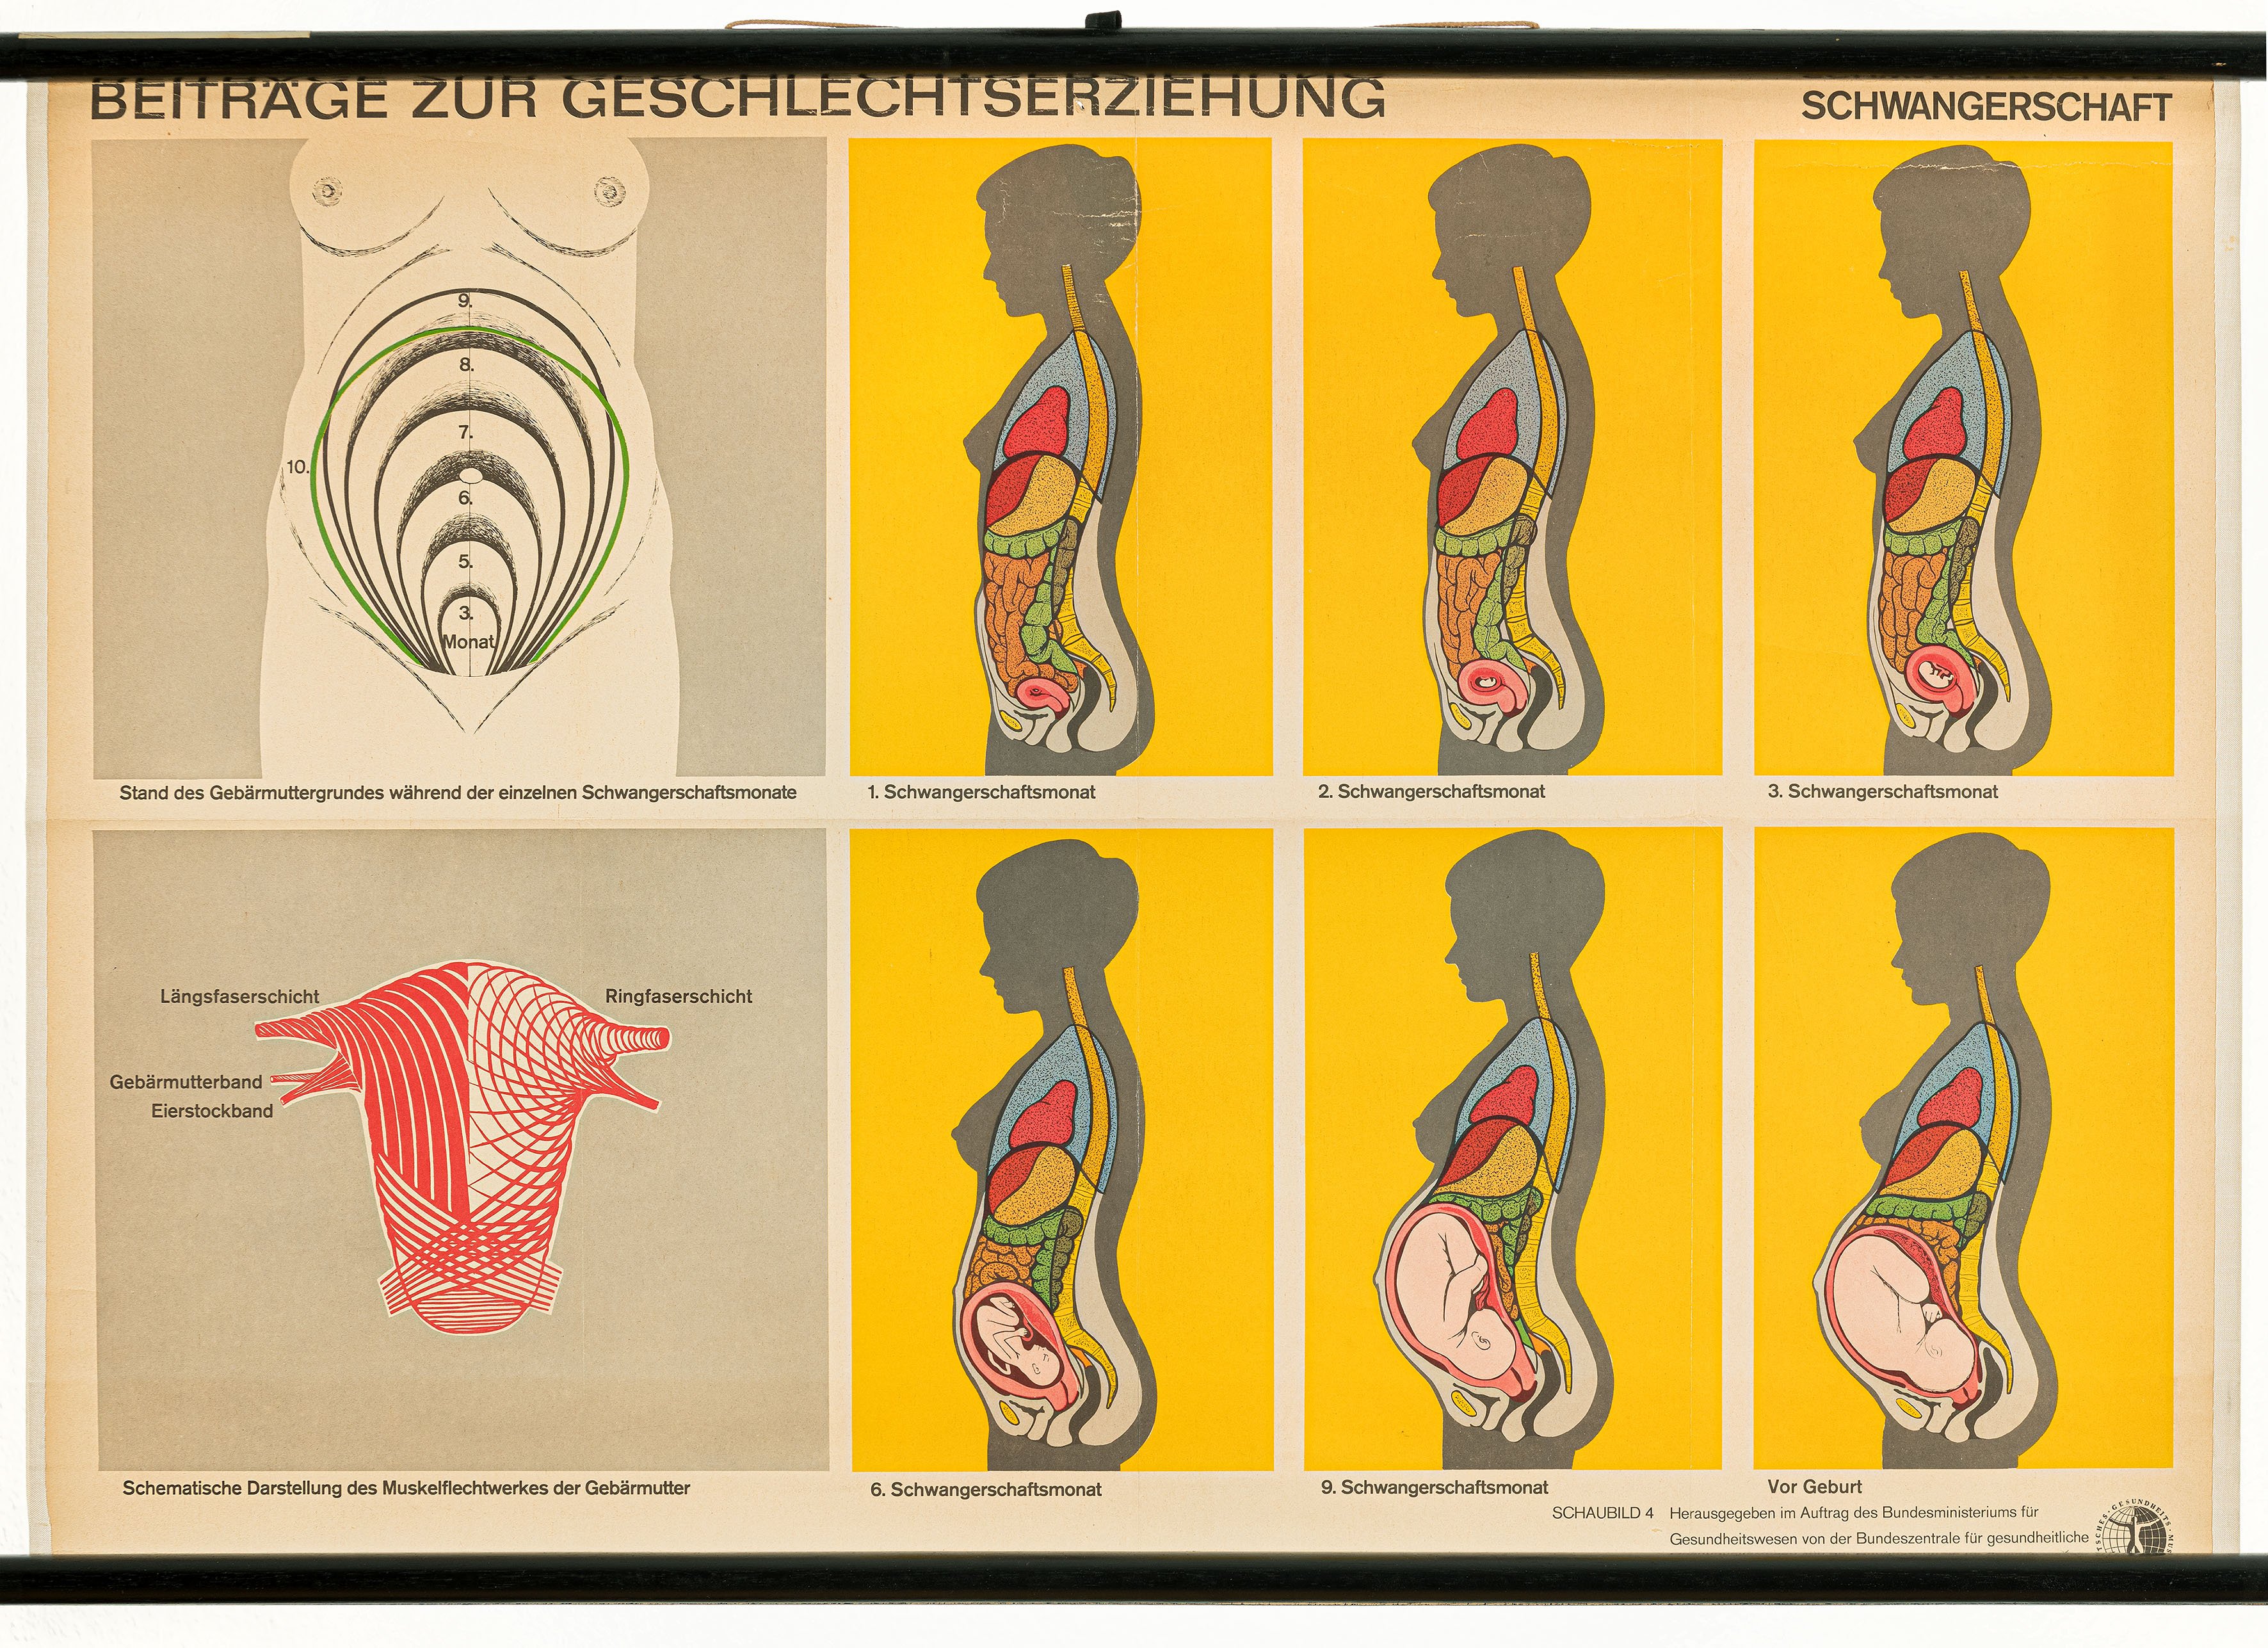 Schulwandbild "Beiträge zur Geschlechtserziehung, Schwangerschaft" (Mitte Museum/Bezirksamt Mitte von Berlin / BZgA, Köln CC0)